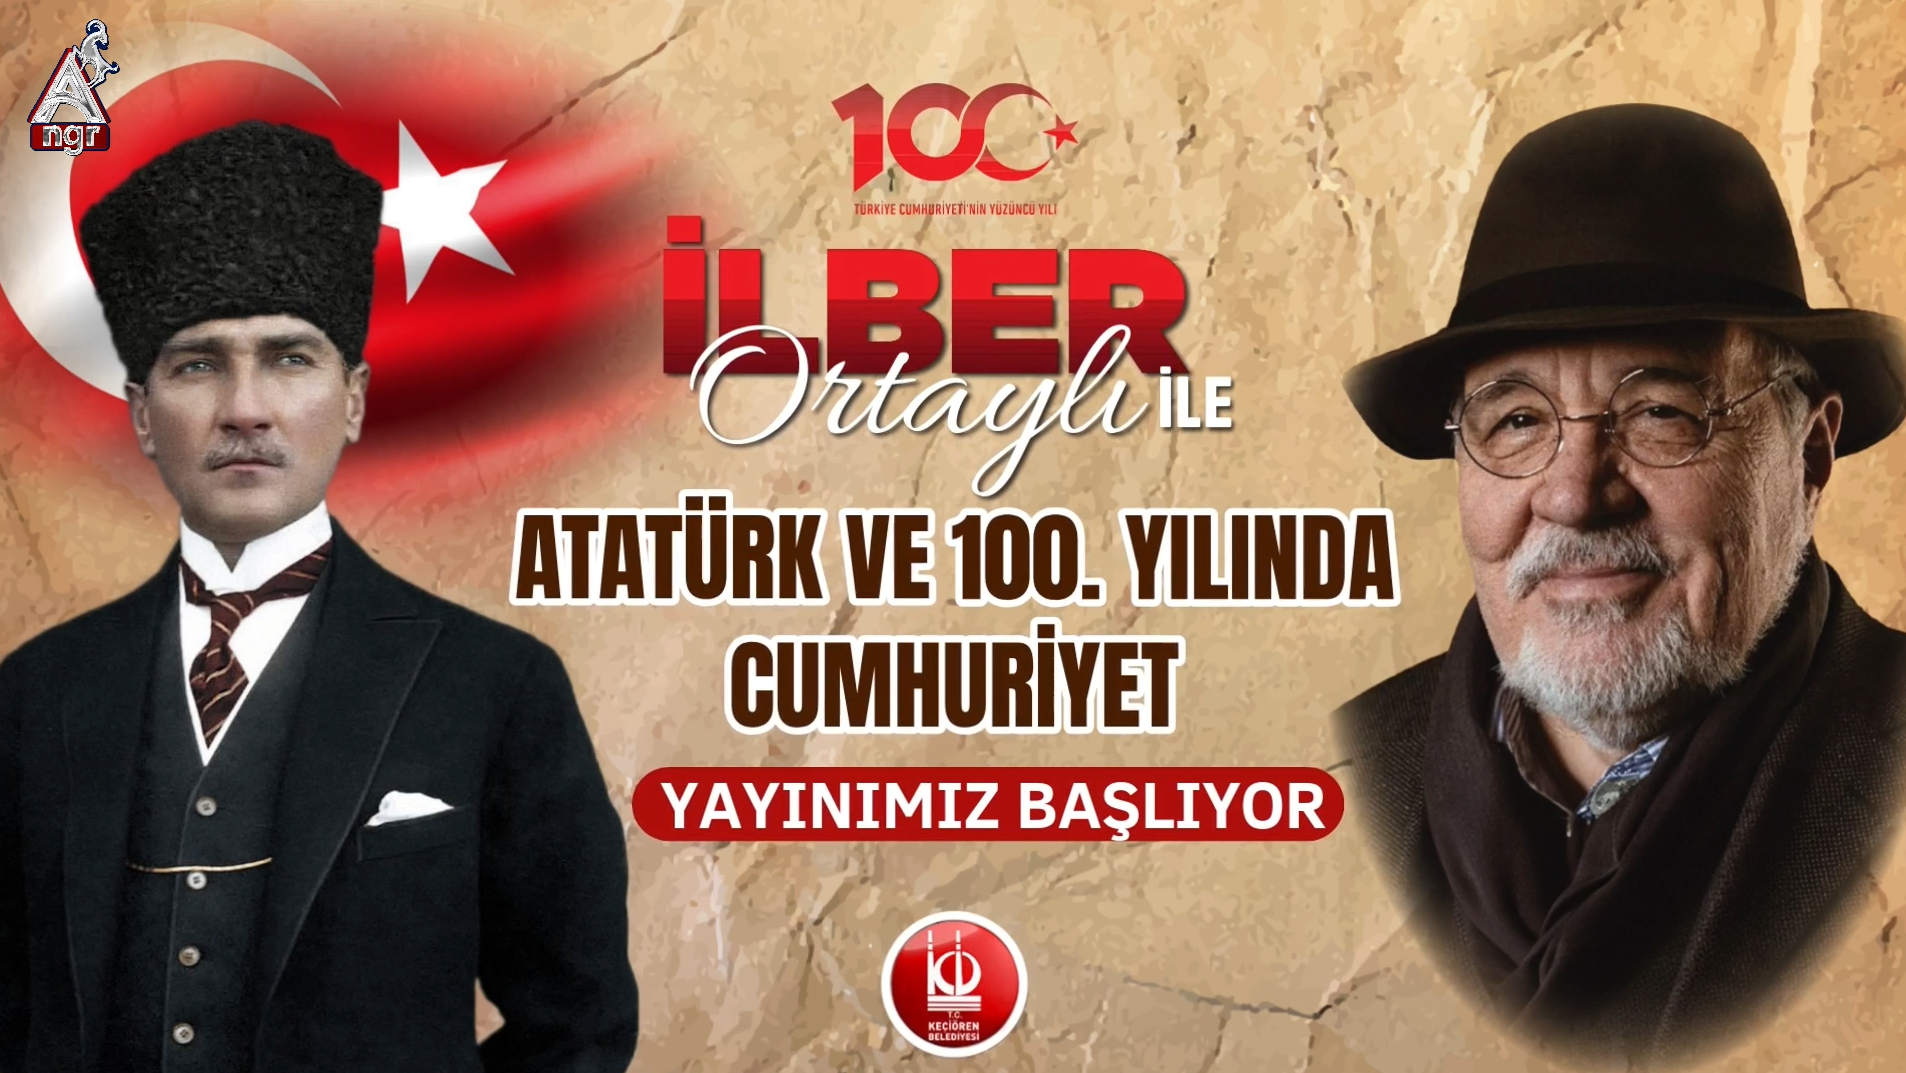 İlber Ortaylı ile Atatürk ve 100. Yılında Cumhuriyet